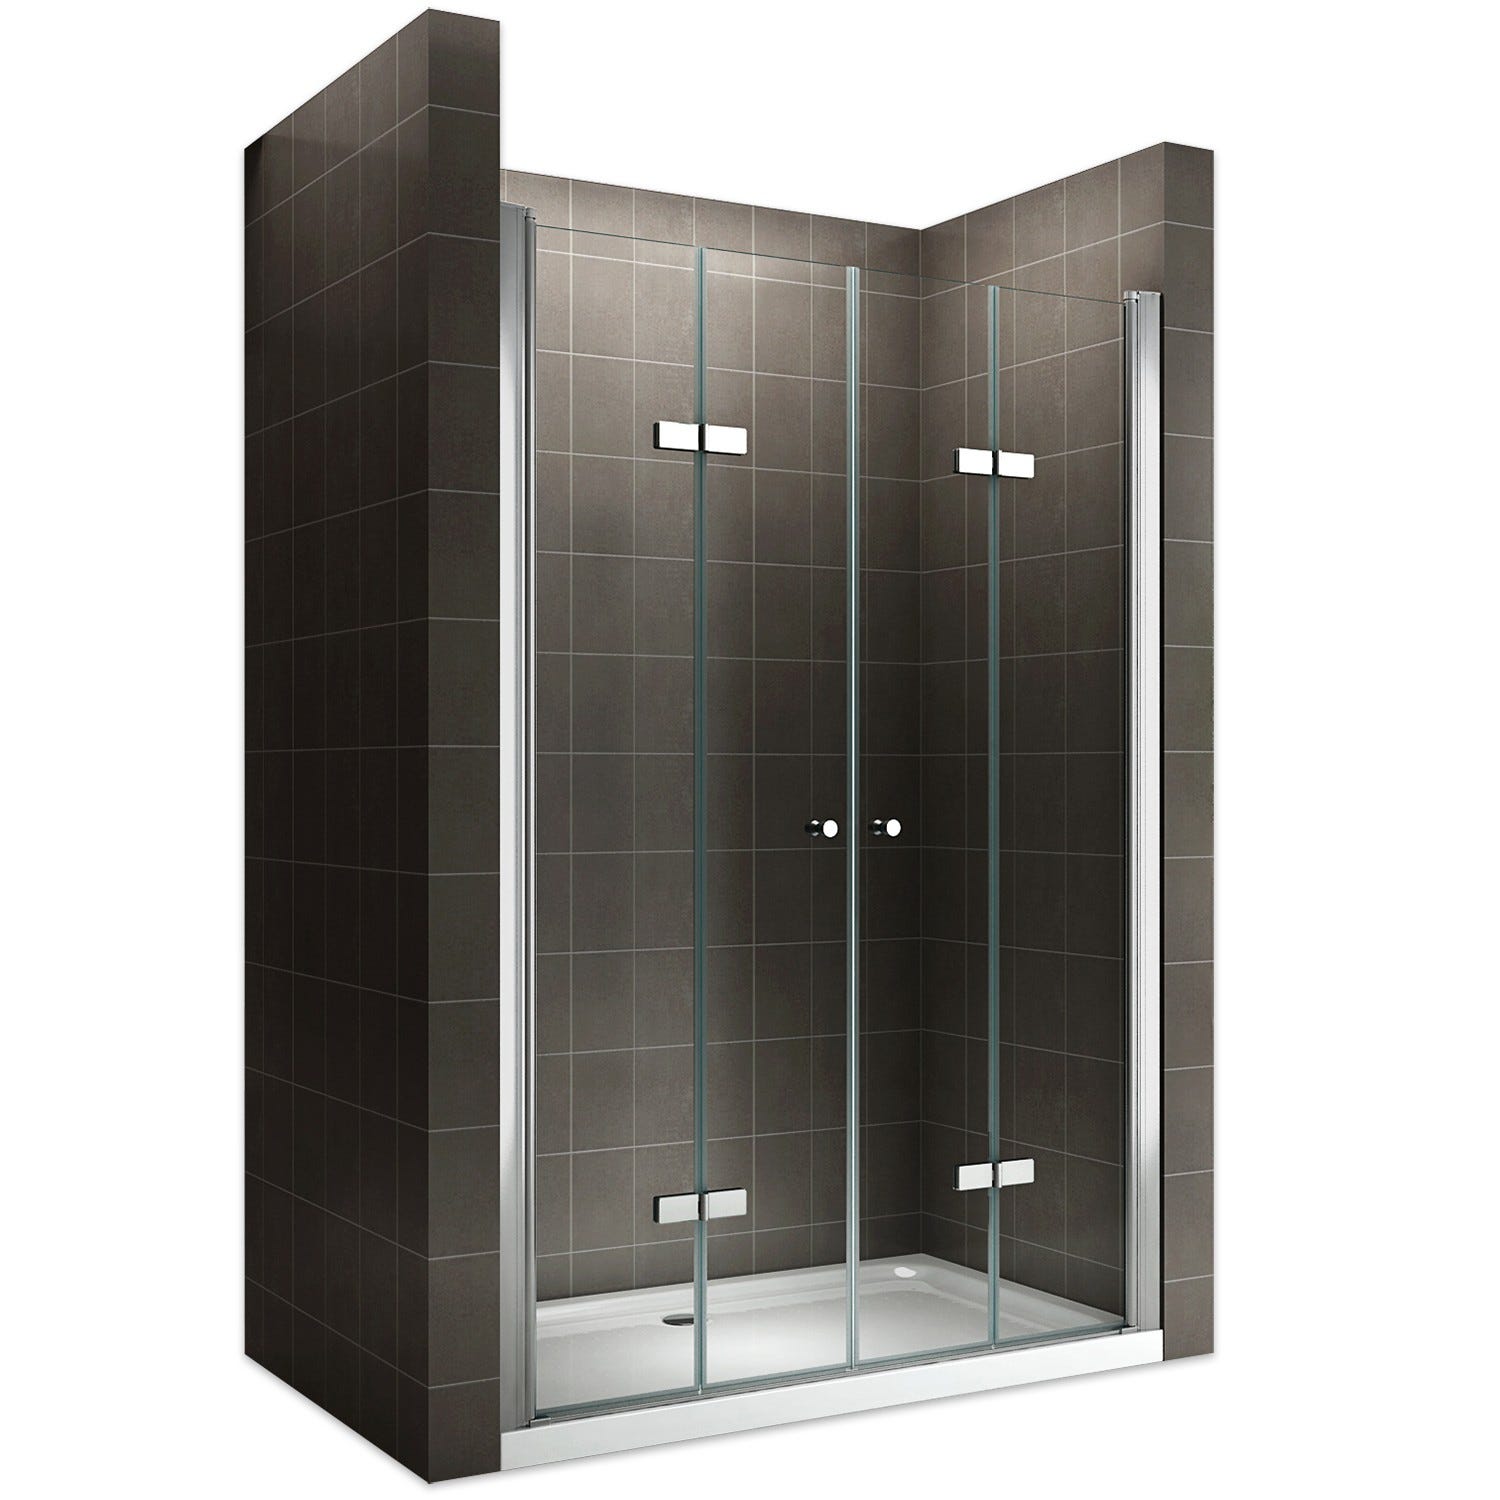 EMMY Porte de douche pliante pivotante H 195 cm largeur réglable 140 à 144 cm verre transparent 0